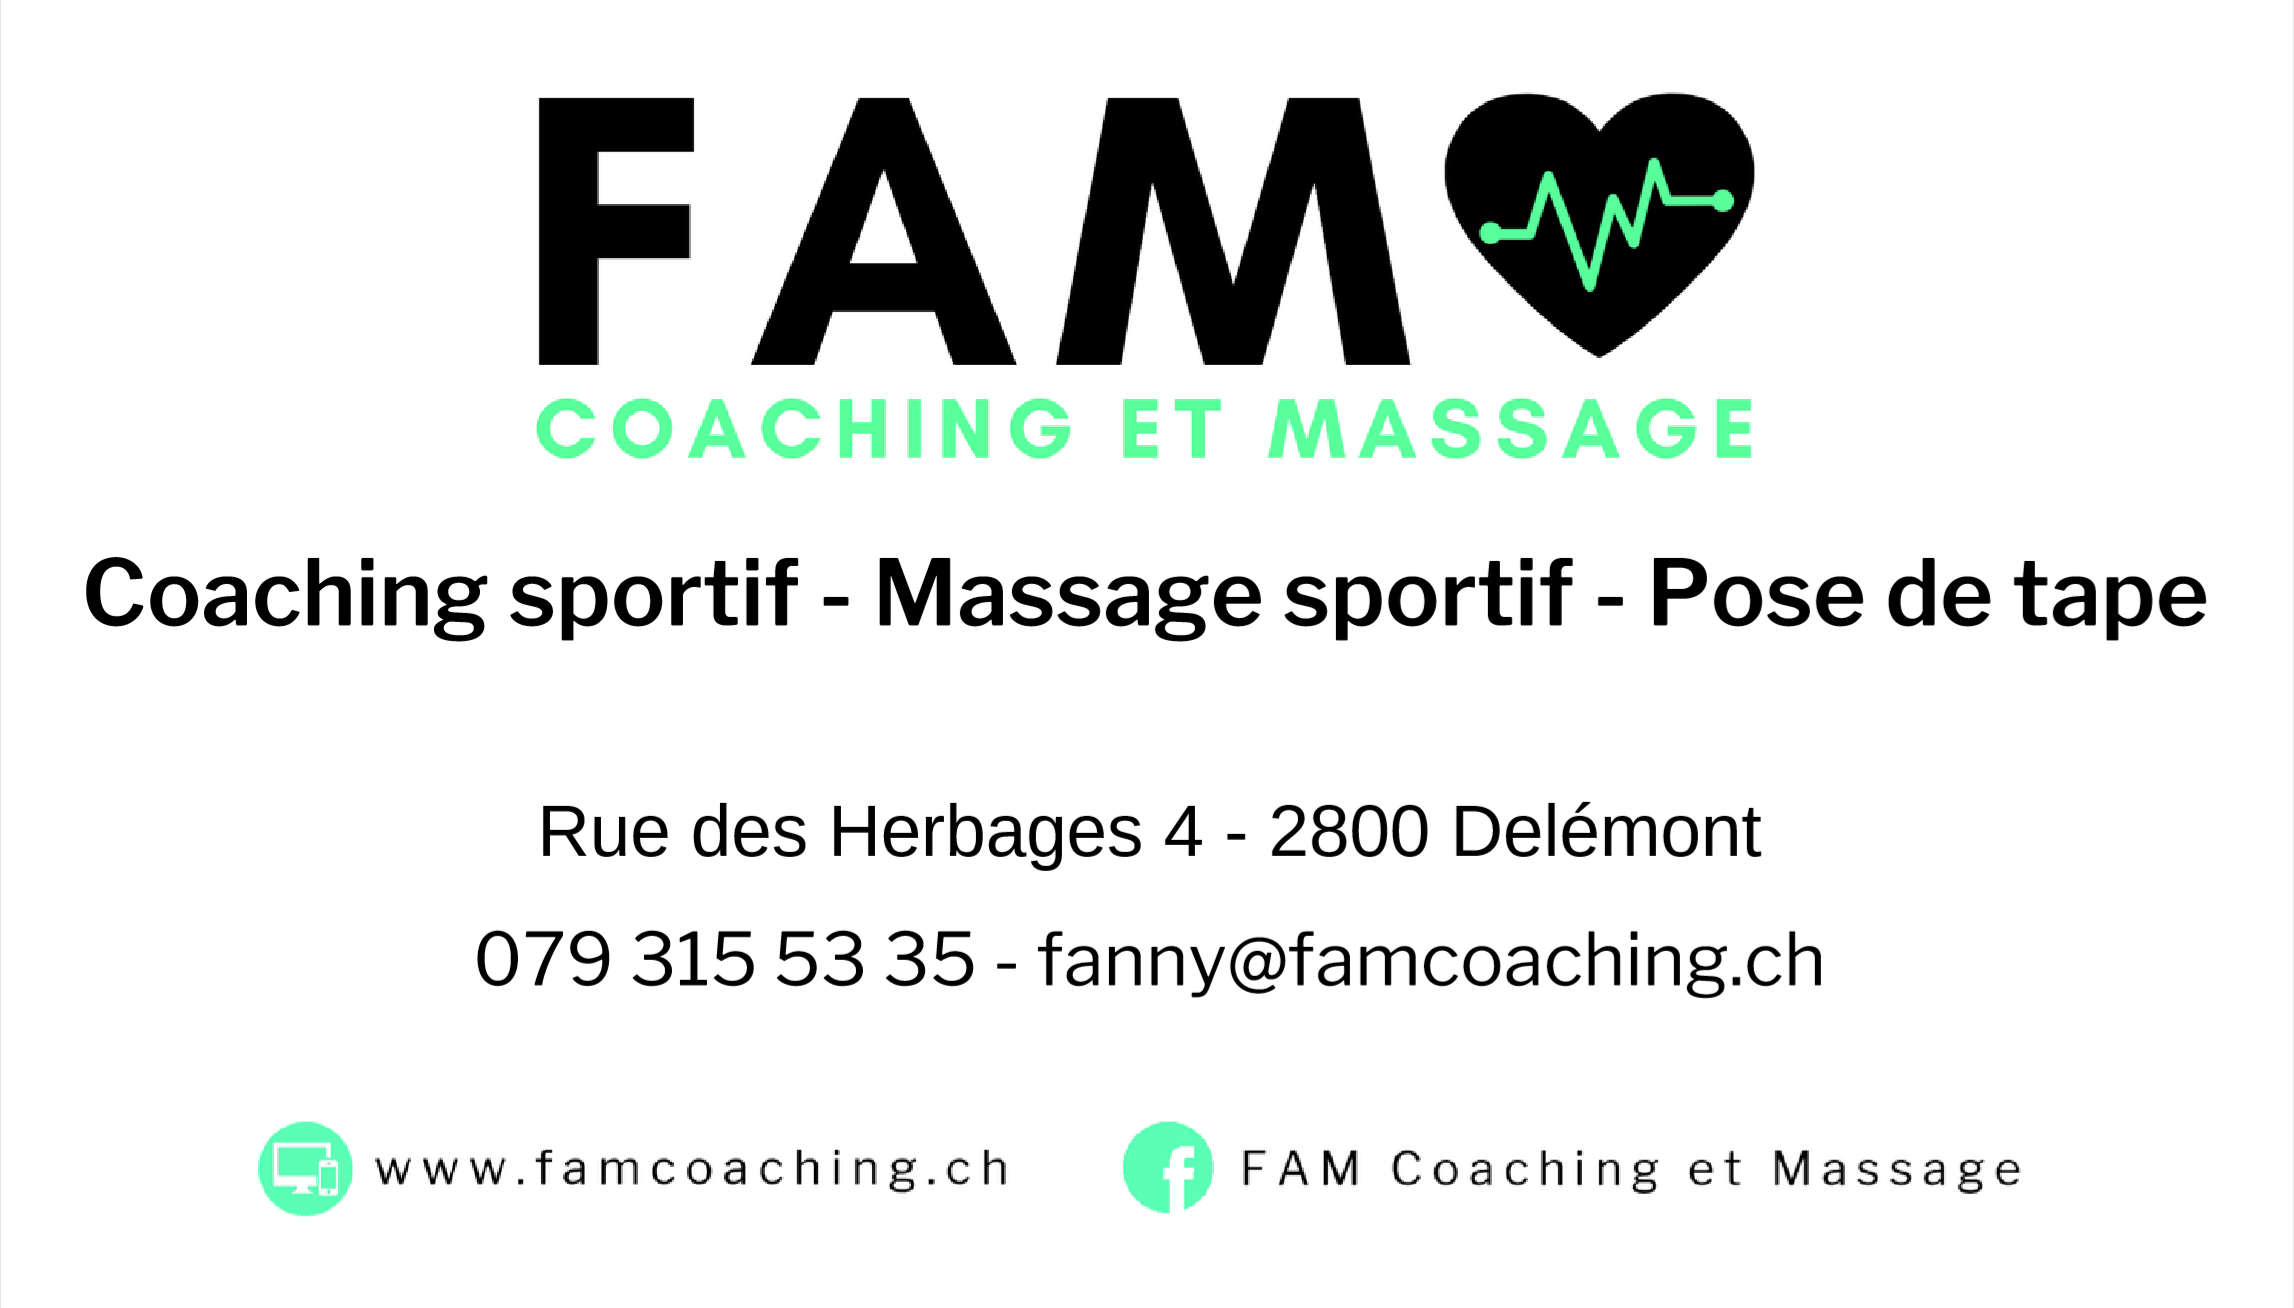 FAM Coaching et Massage